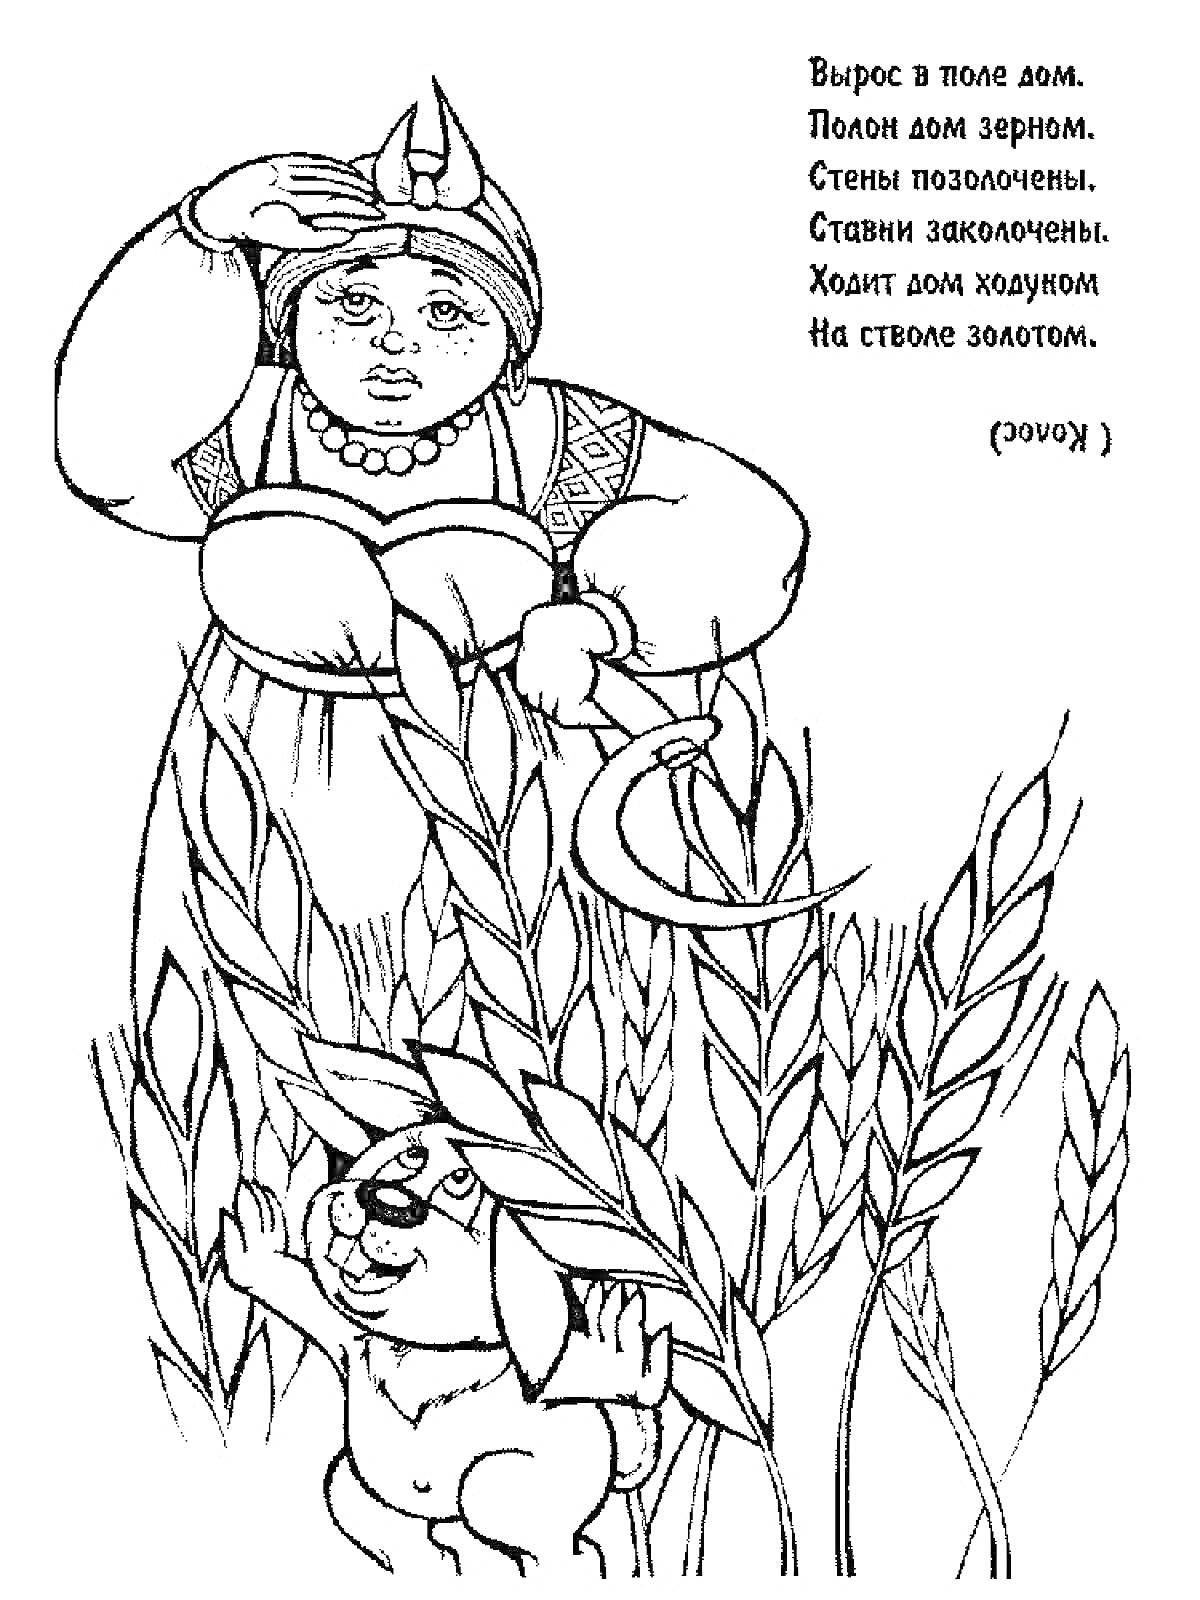 Женщина с серпом и собака в поле пшеницы, загадка про колосок в правом верхнем углу